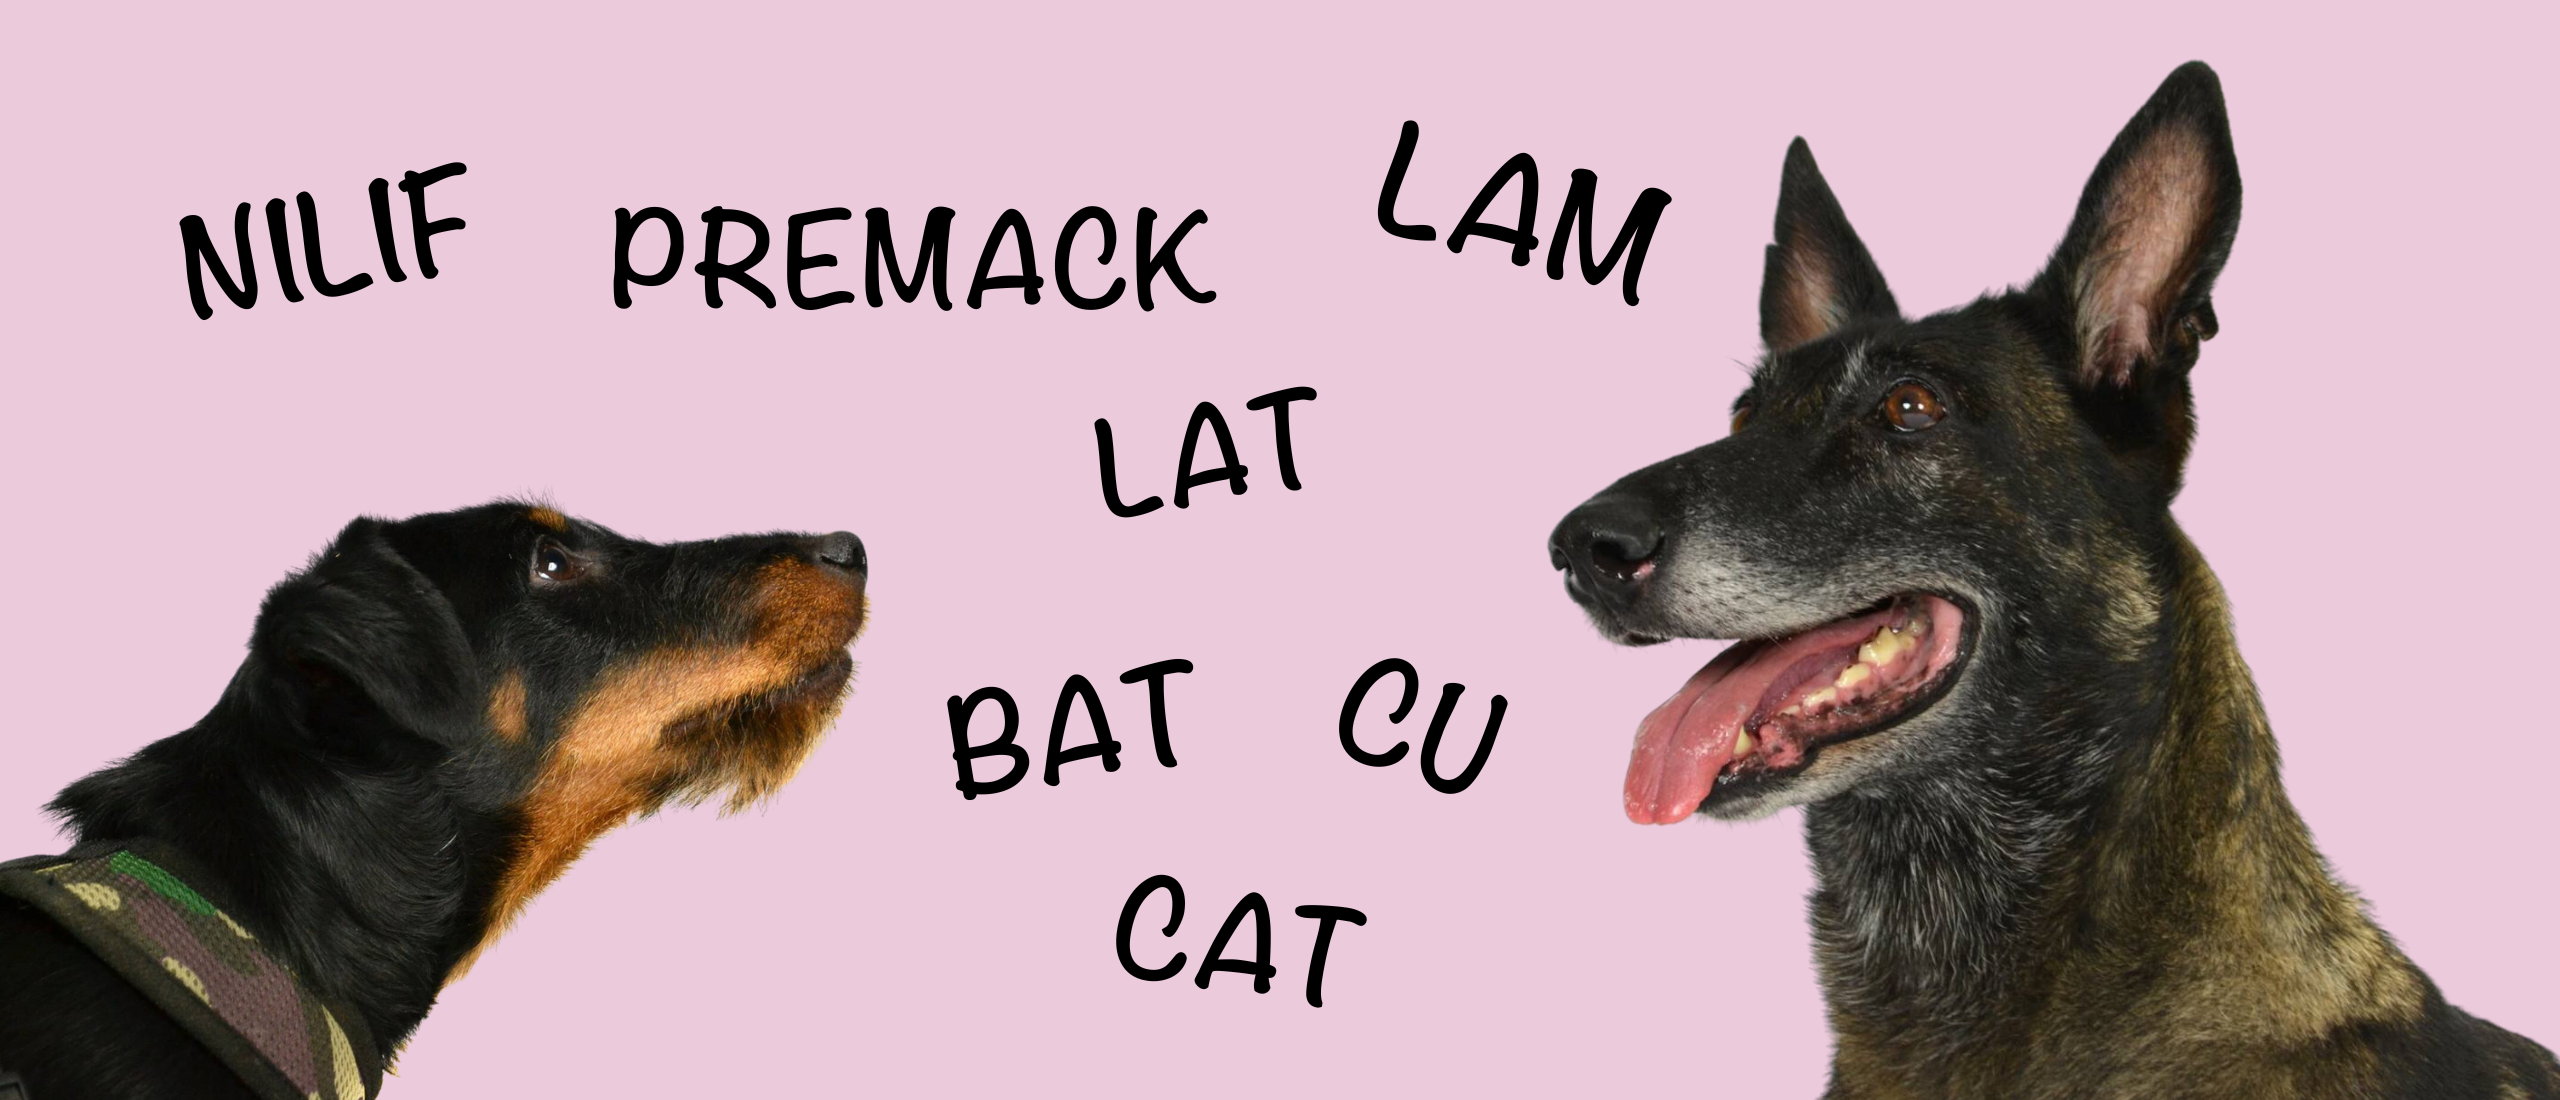 Wat is BAT training? En wat zijn andere trainingsmethodes zoals LAT, LAM, CAT en Premack?